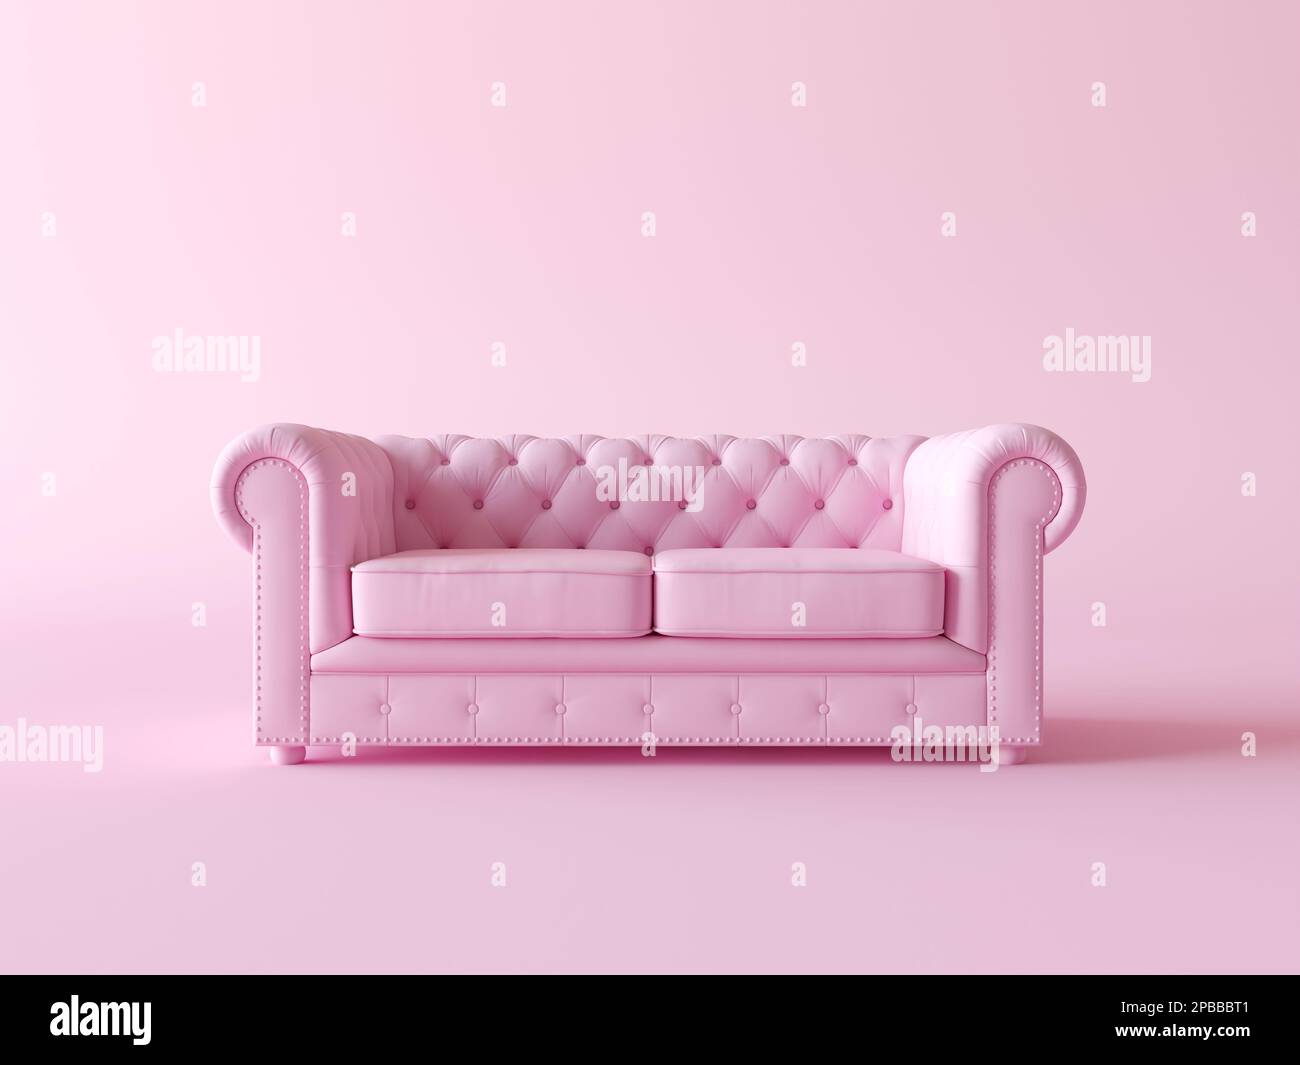 Modernes Sofa im pinkfarbenen Wohnzimmer. Minimalistisches Designkonzept. Pastellfarbener Stil. darstellung des 3D-Renderings. Einzelliege, Sitz in flachem monochromen Rosa Stockfoto